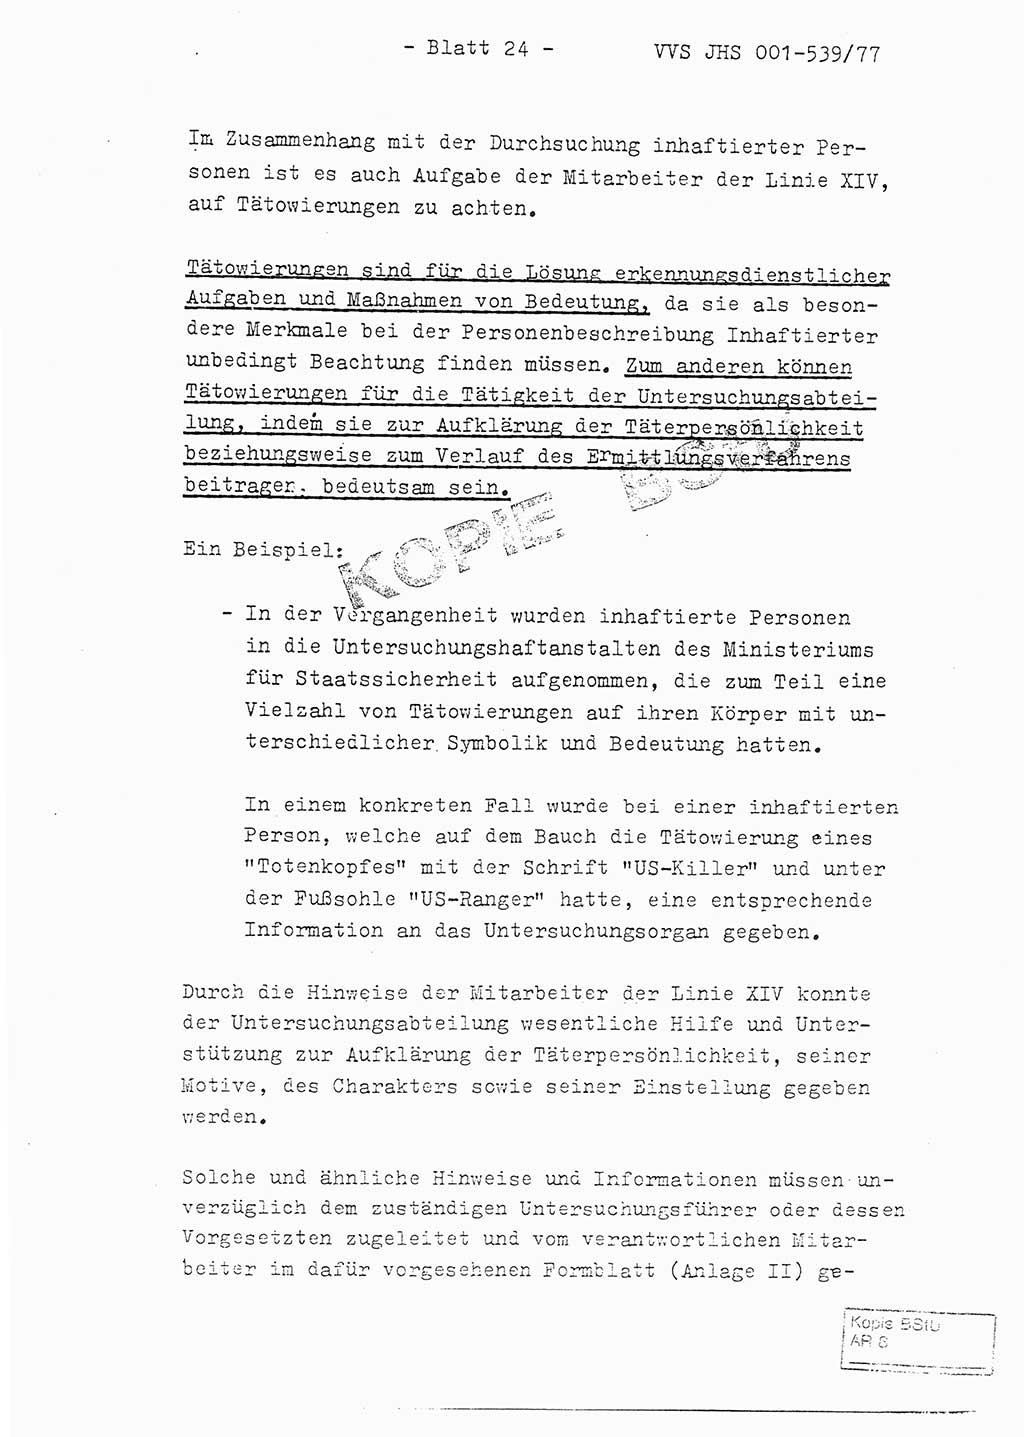 Fachschulabschlußarbeit Hauptmann Dietrich Jung (Abt. ⅩⅣ), Leutnant Klaus Klötzner (Abt. ⅩⅣ), Ministerium für Staatssicherheit (MfS) [Deutsche Demokratische Republik (DDR)], Juristische Hochschule (JHS), Vertrauliche Verschlußsache (VVS) 001-539/77, Potsdam 1978, Seite 24 (FS-Abschl.-Arb. MfS DDR JHS VVS 001-539/77 1978, S. 24)